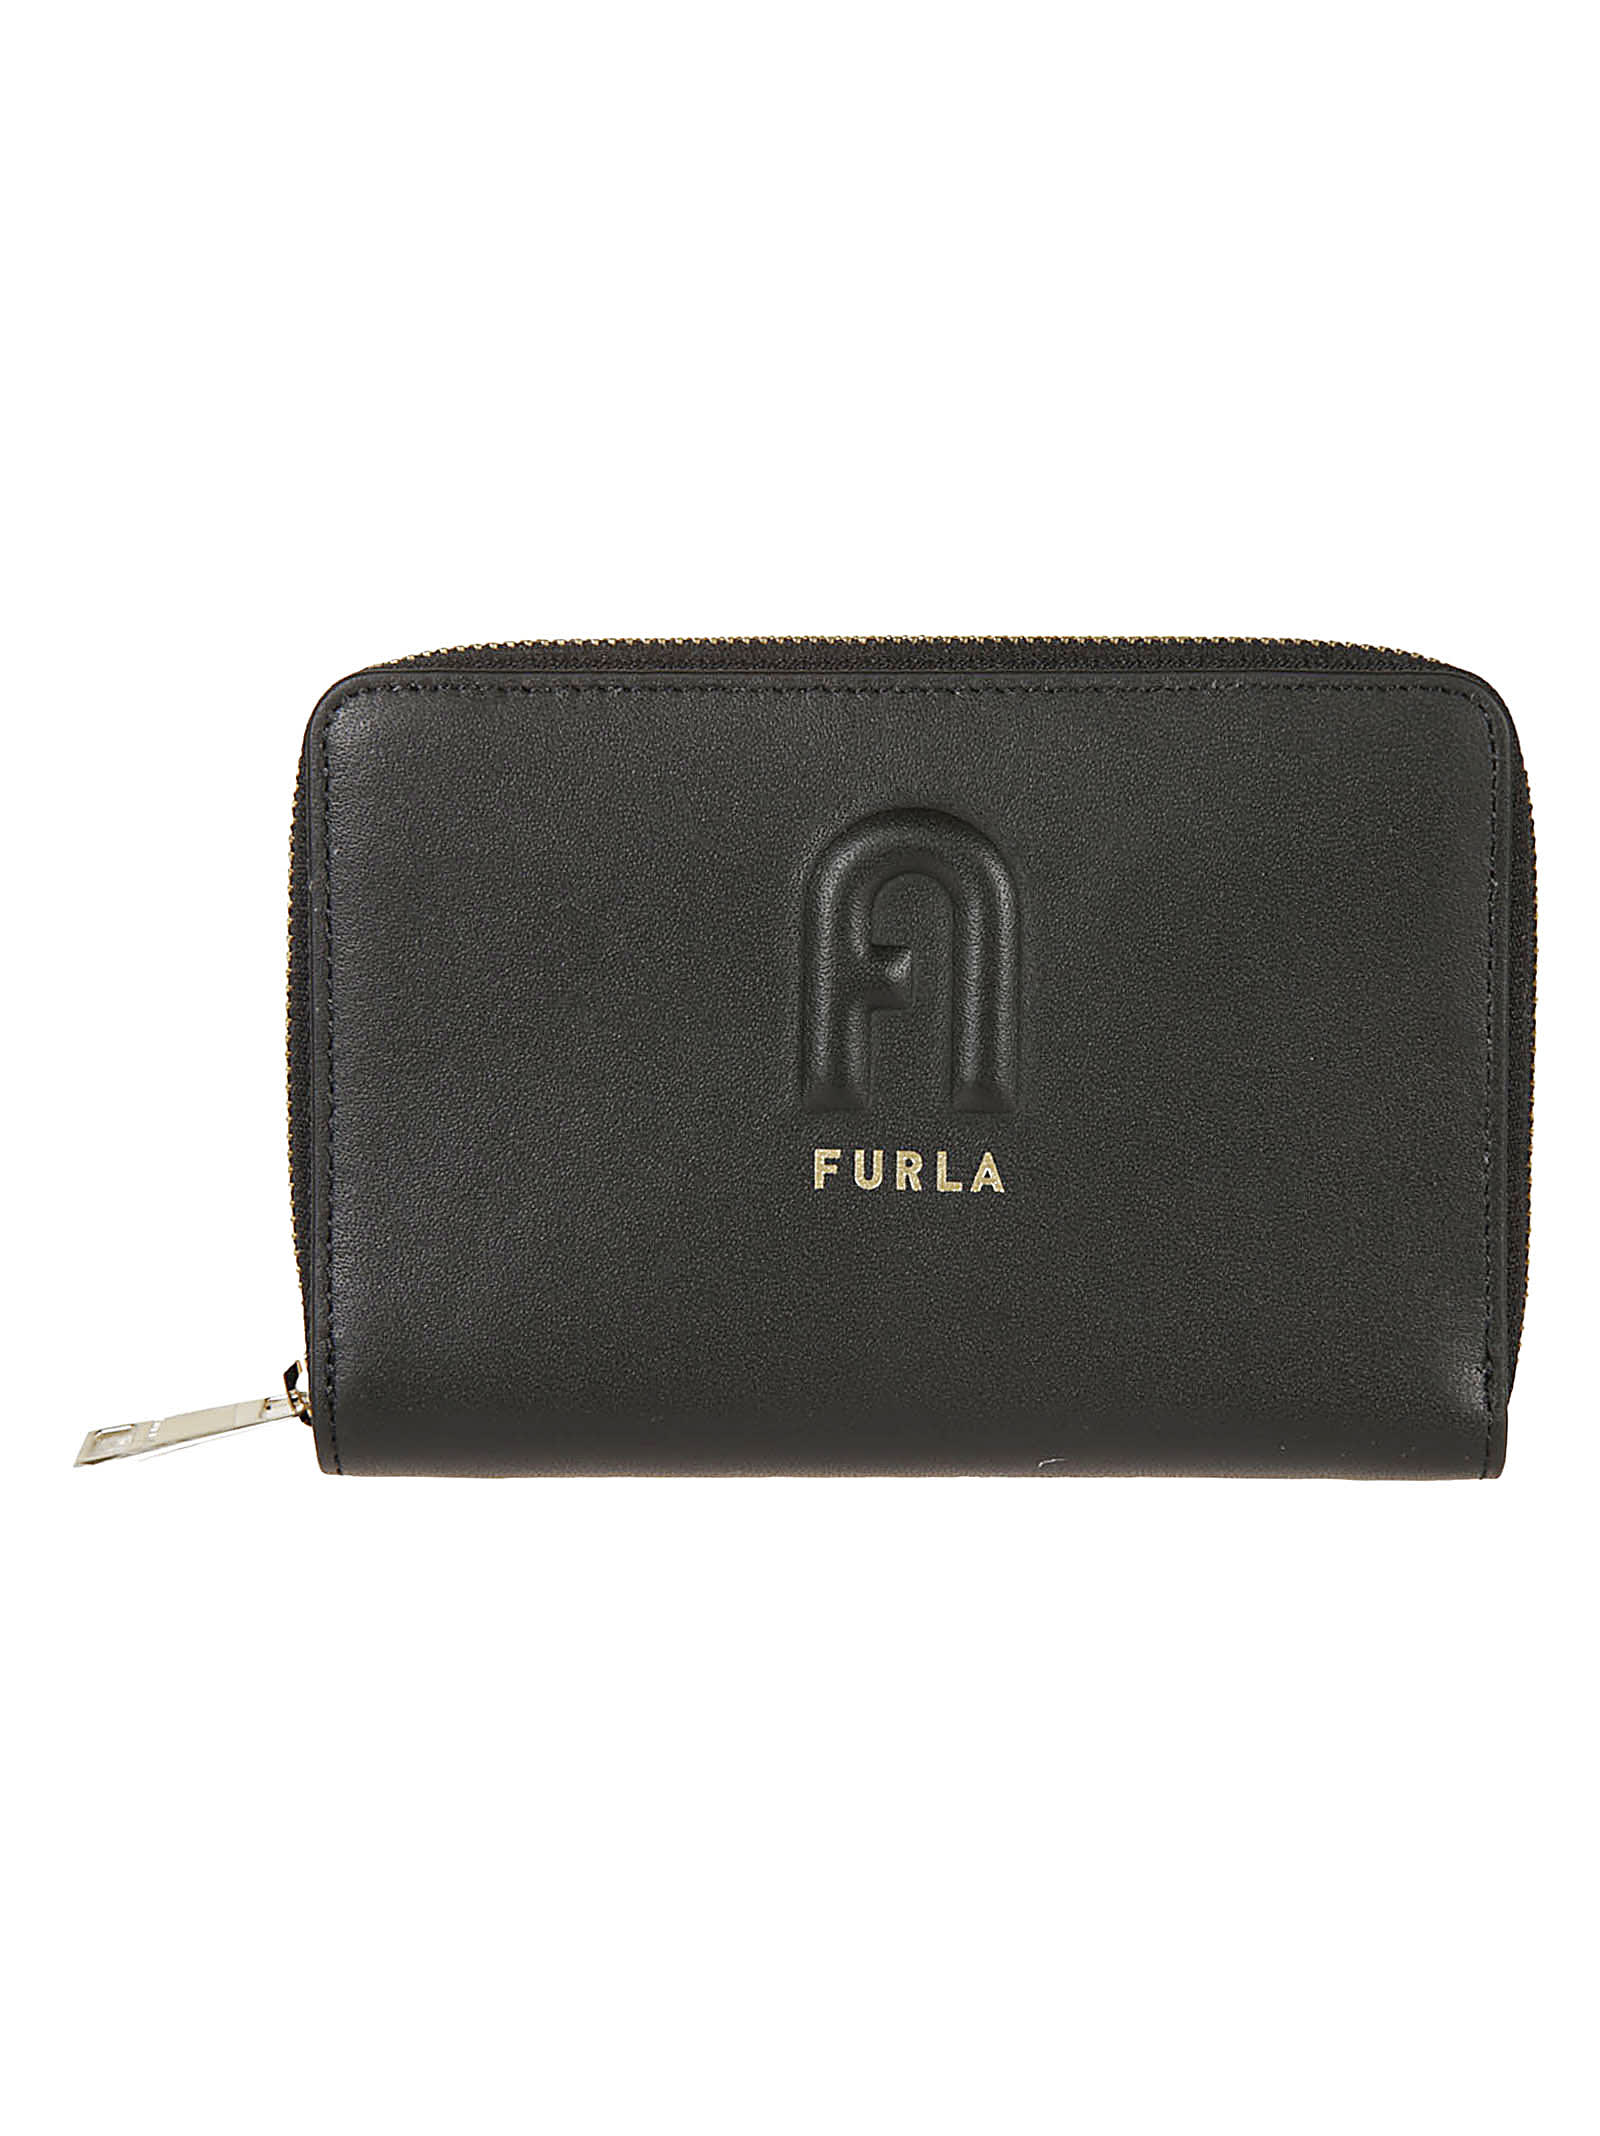 Furla Rita Zip-around Wallet In Black | ModeSens